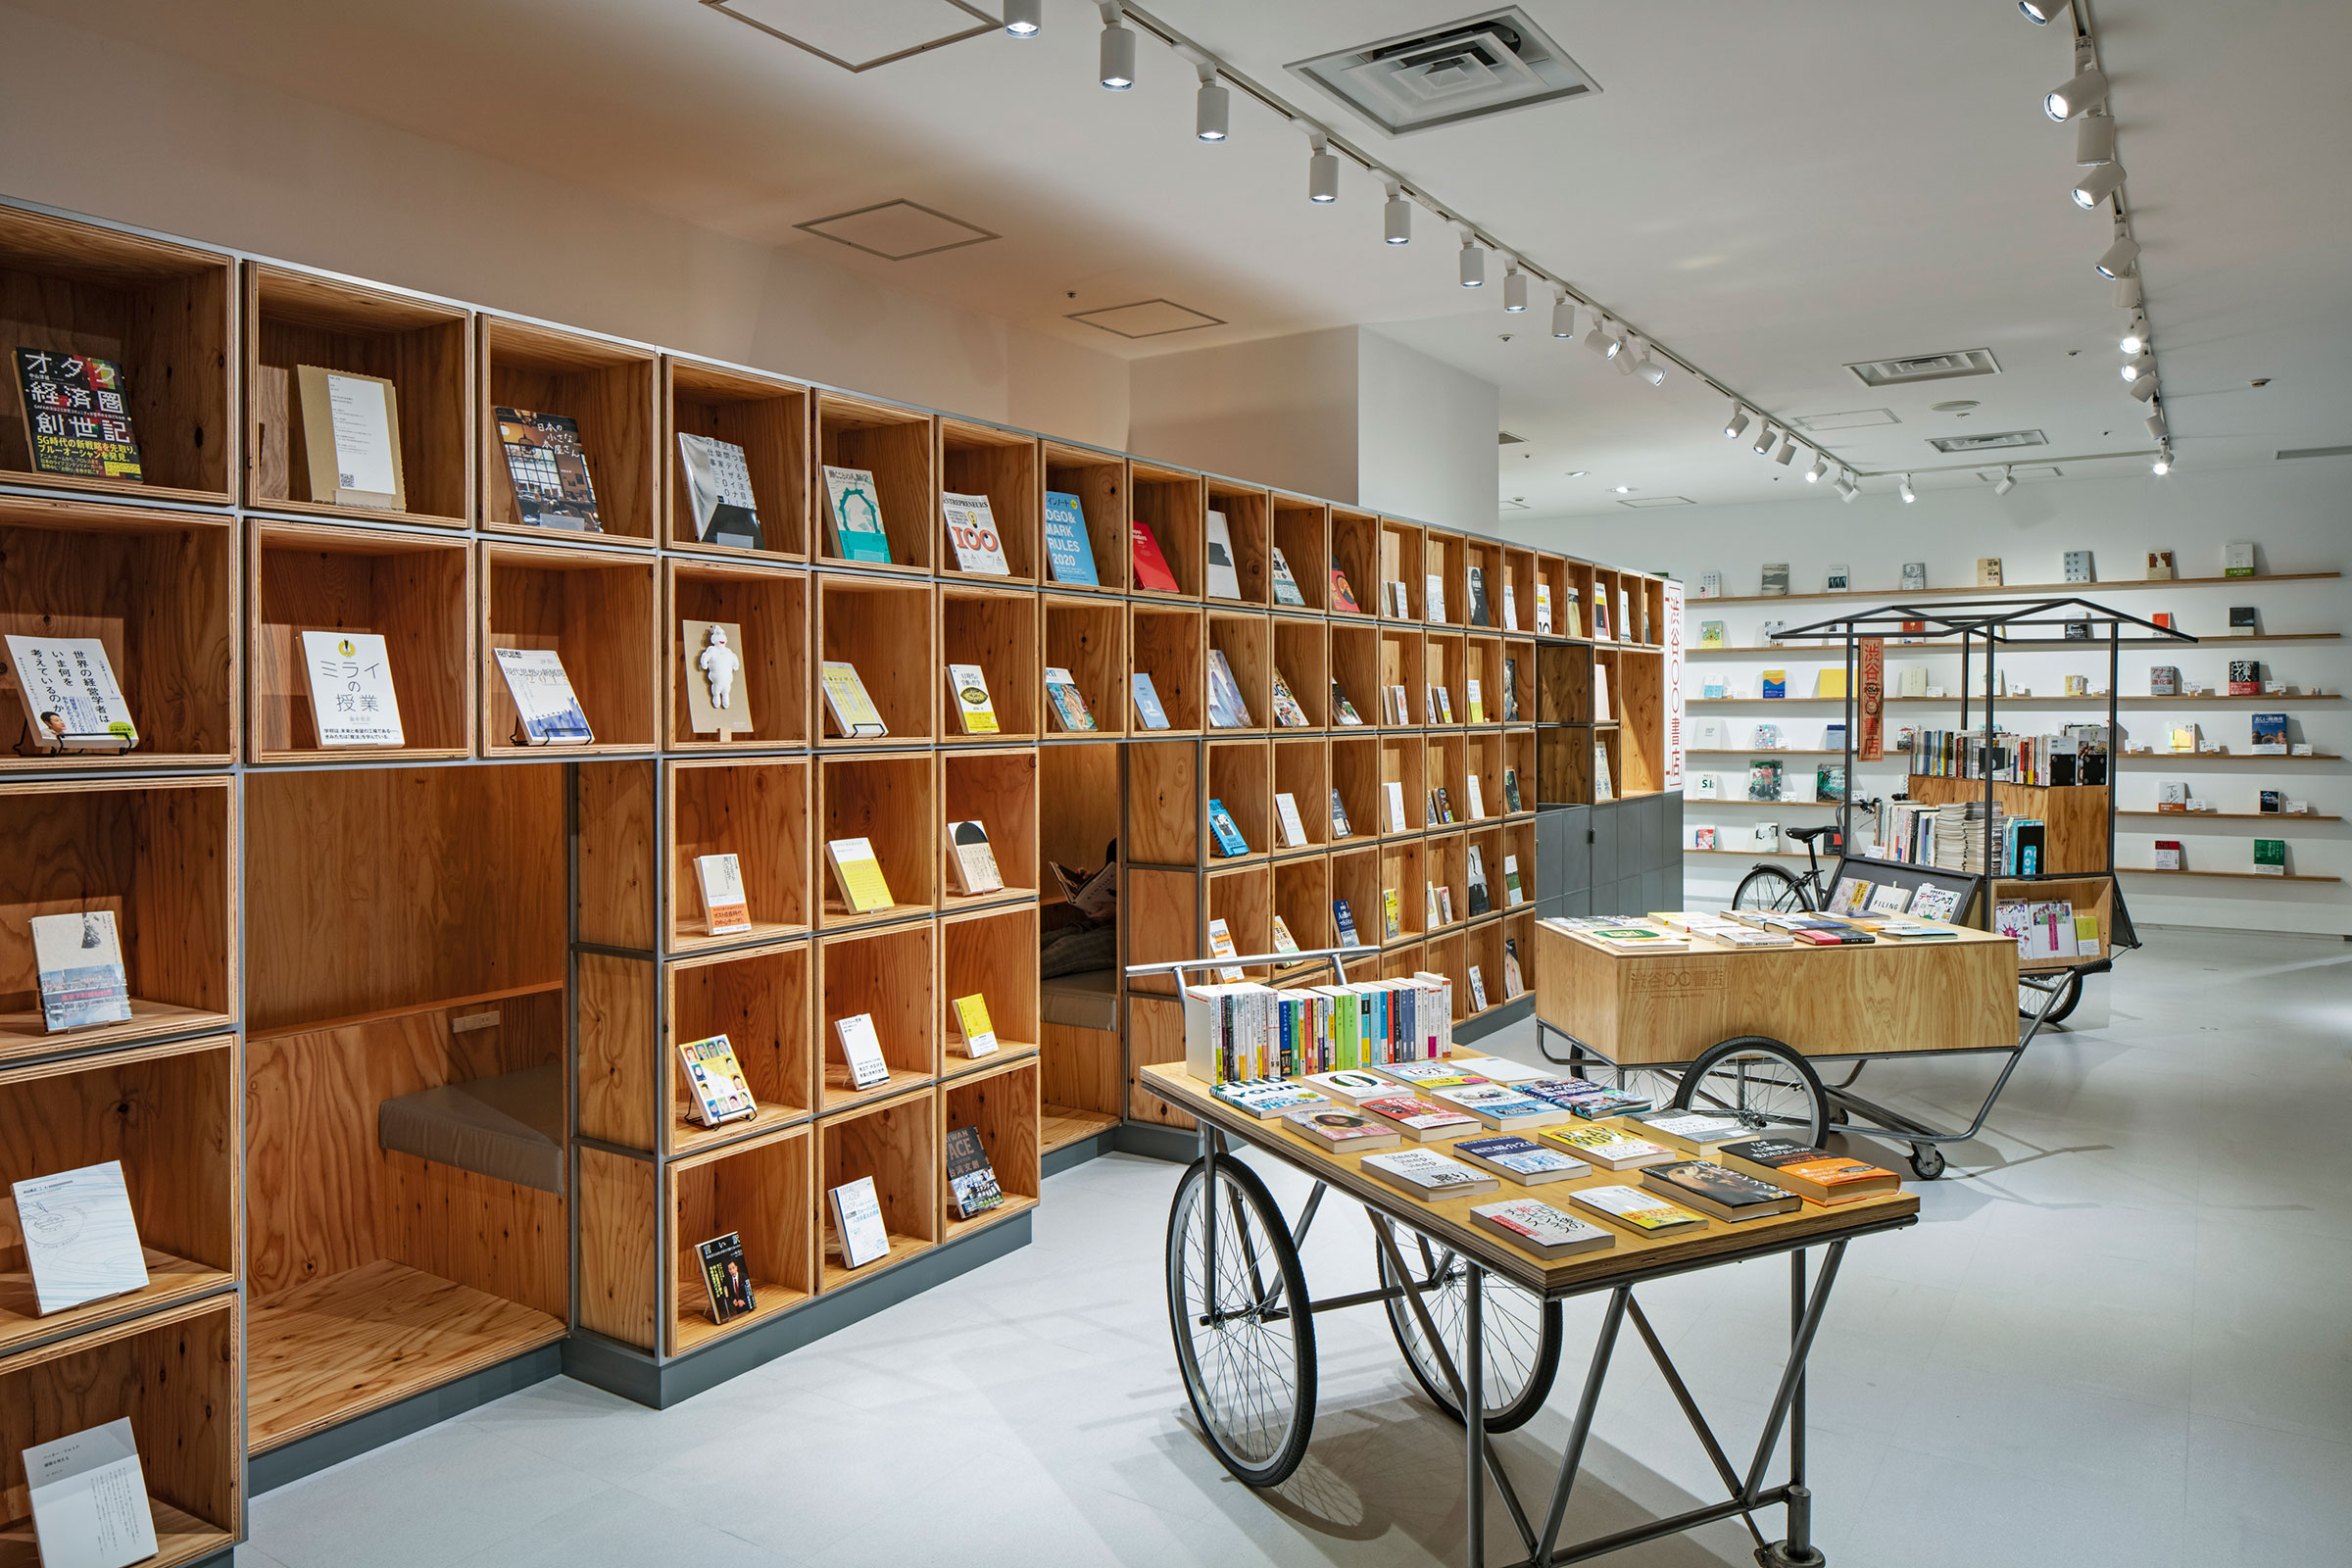 林昂平 / Studio ｢ ｣による、東京・渋谷の店舗「渋谷〇〇書店」。個人